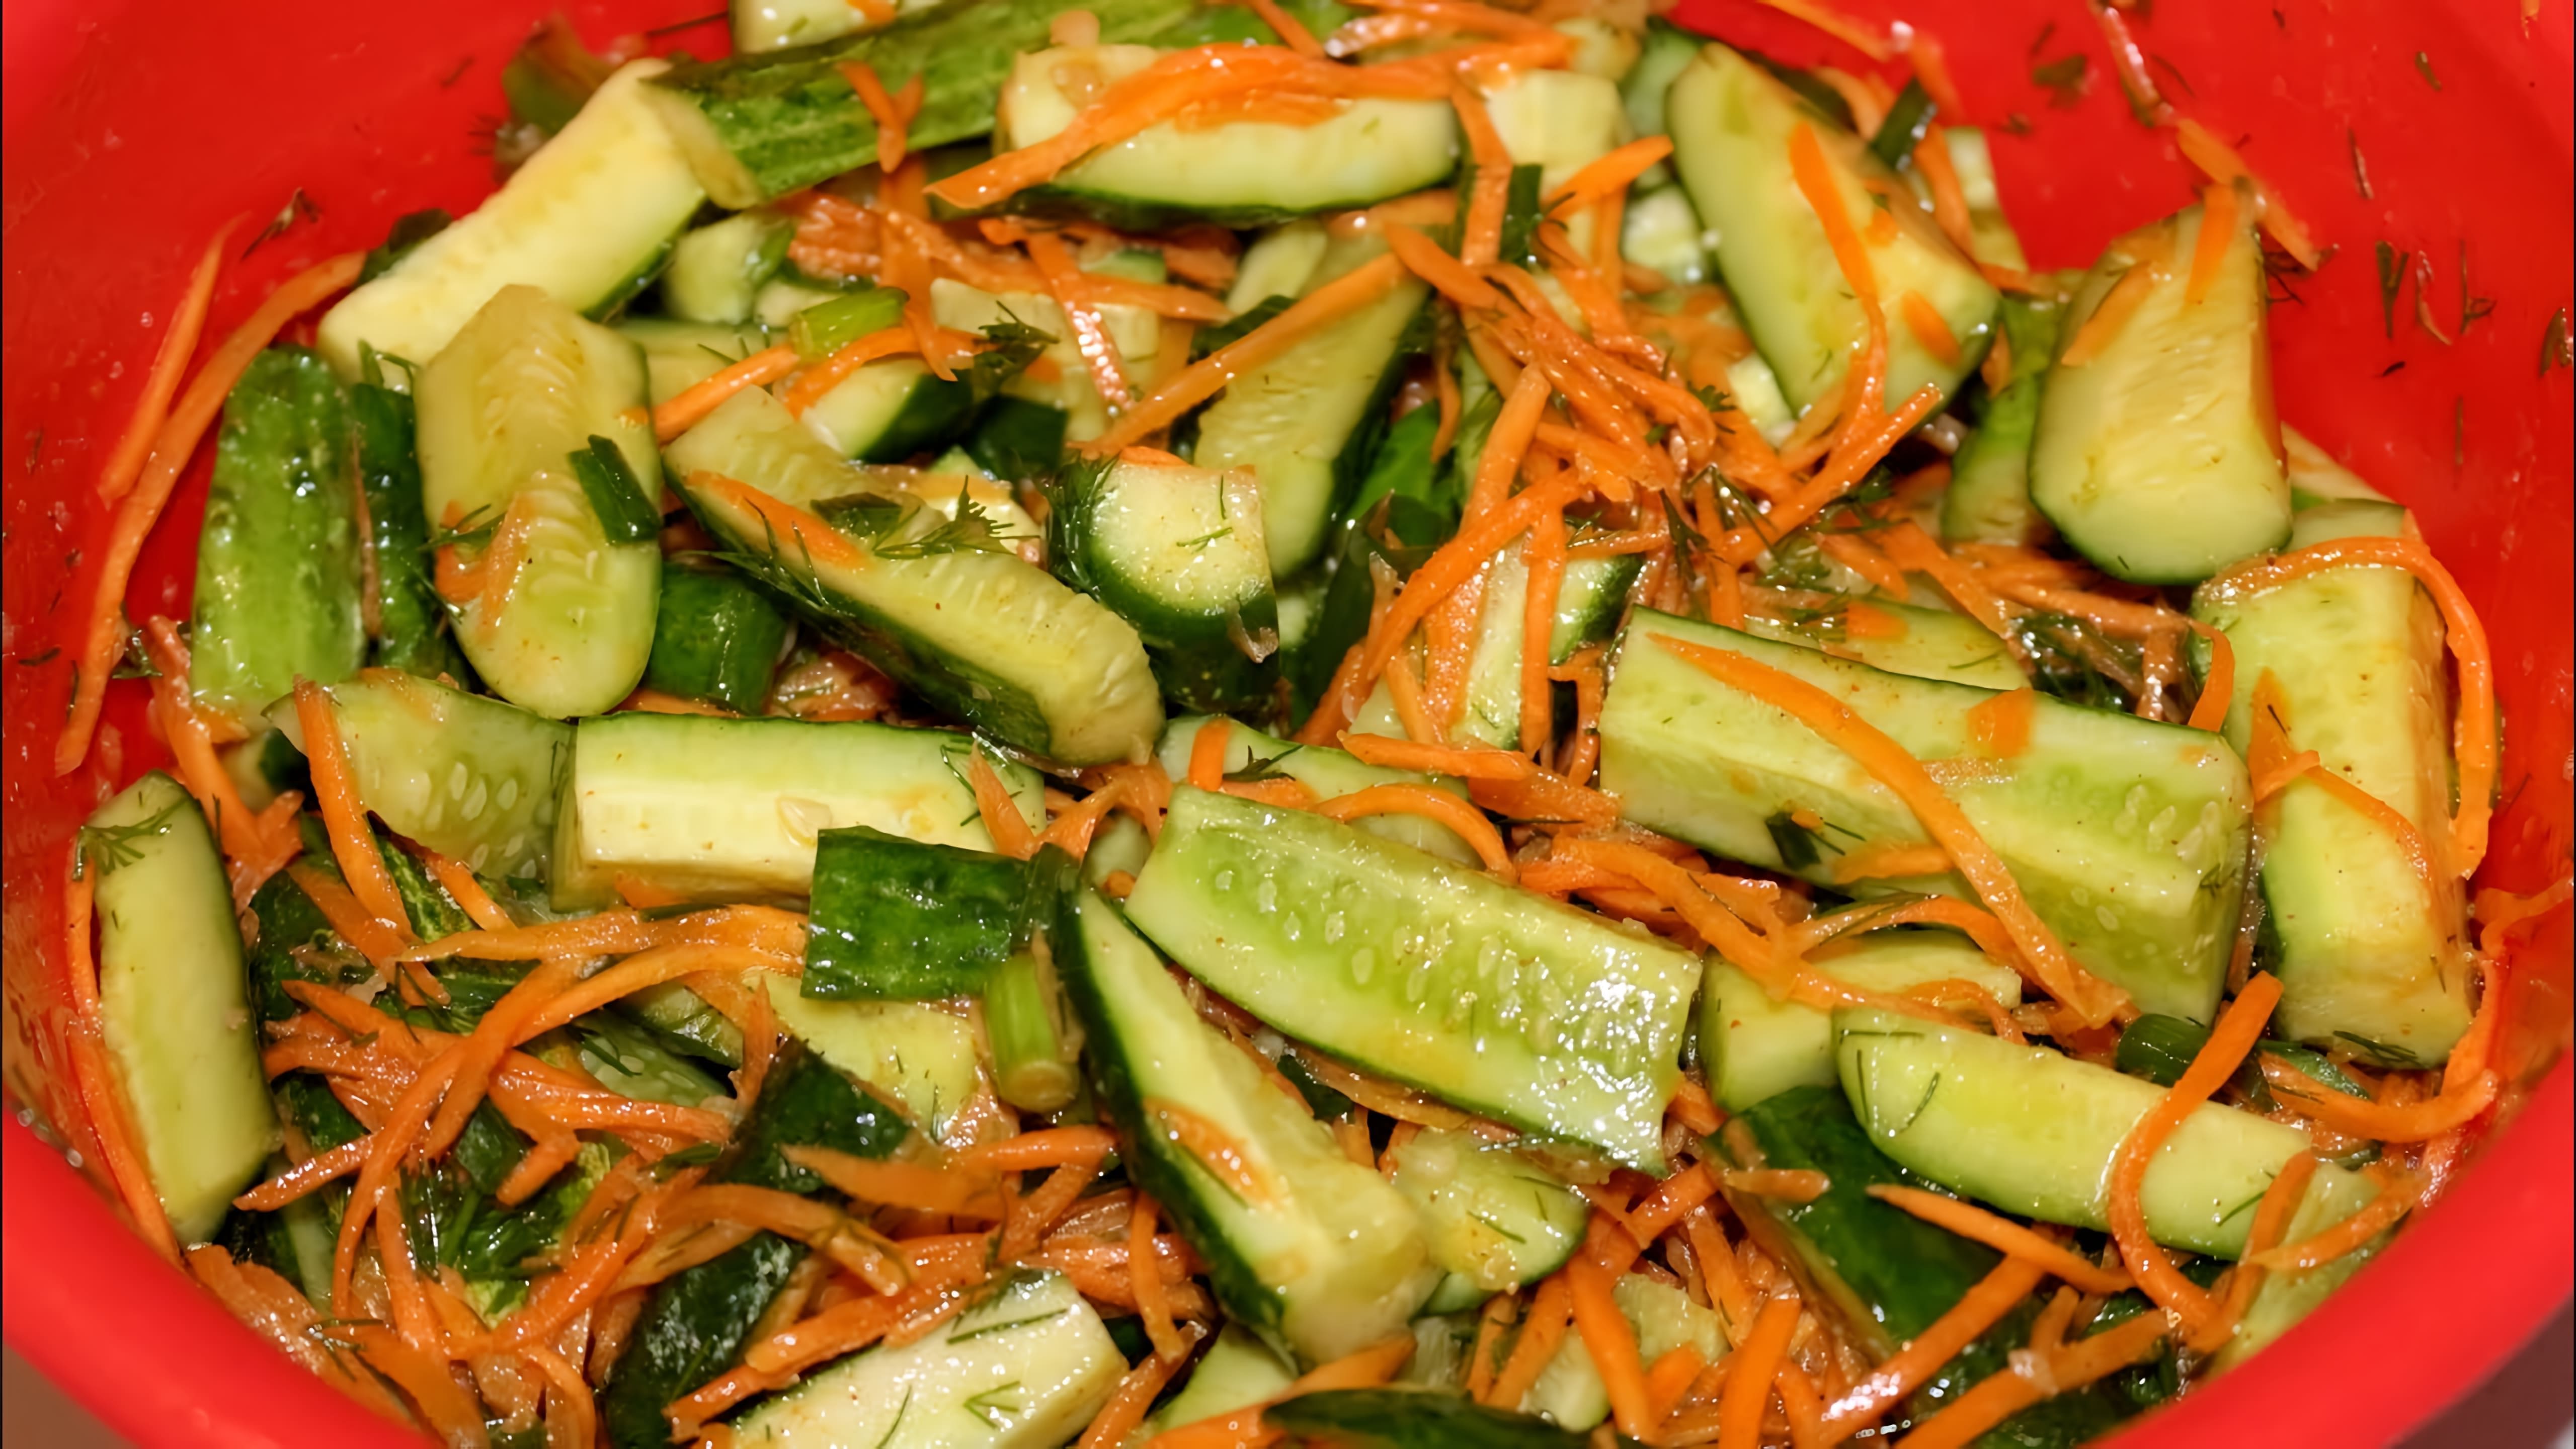 В этом видео демонстрируется процесс приготовления салата из свежих огурцов и моркови по-корейски